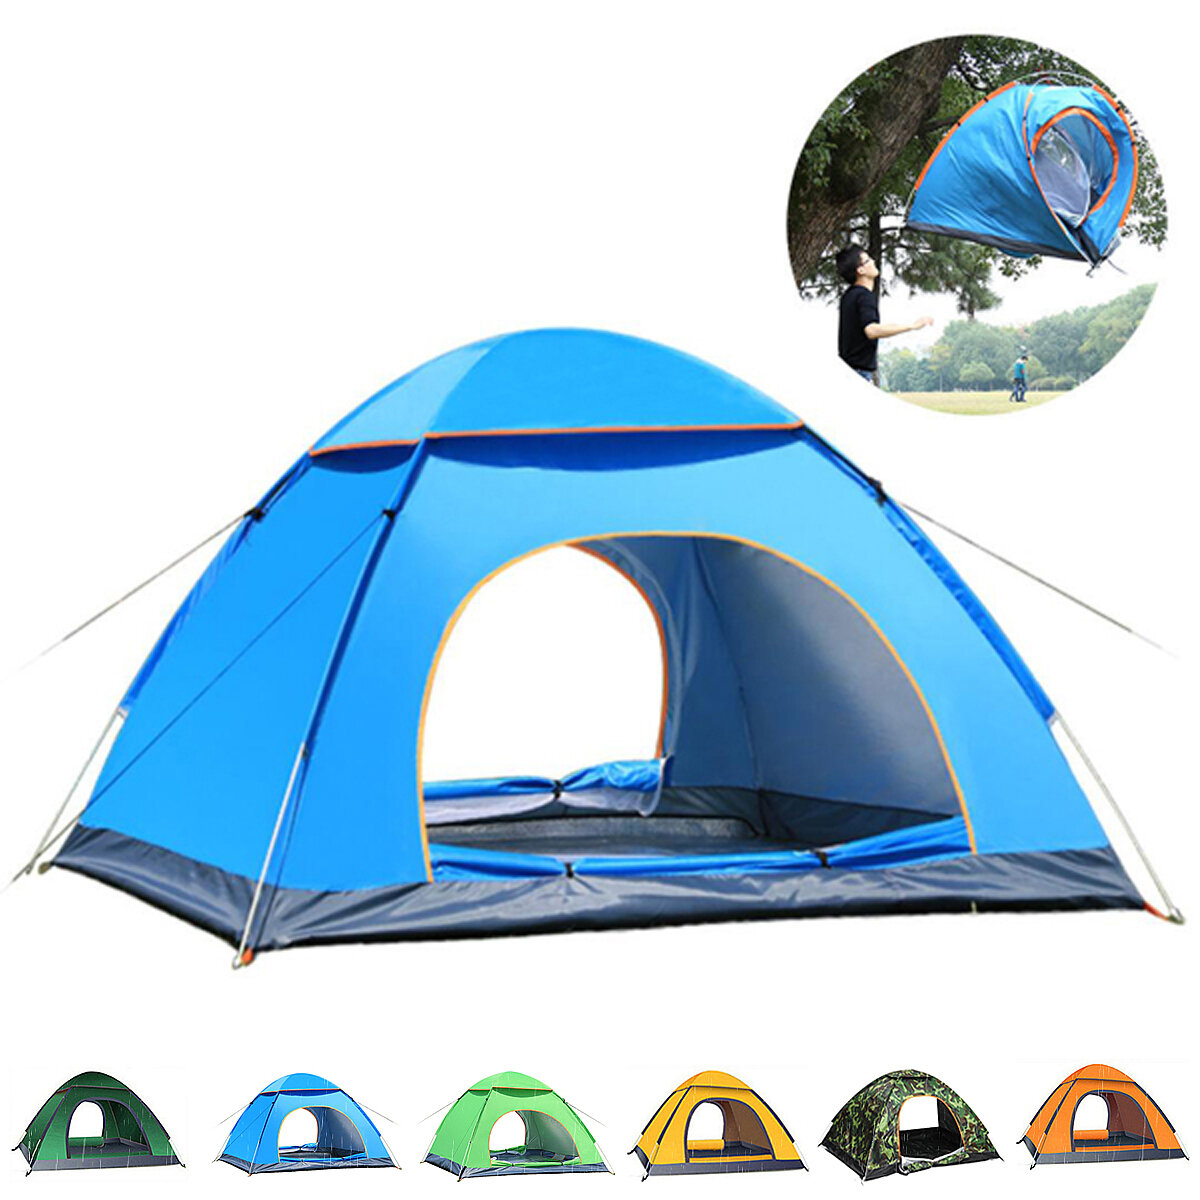 ançais: Tente de camping automatique pour 2-3 personnes avec 2 portes, respirante, imperméable, avec protection UV, auvent pour protéger du soleil en extérieur, pour voyages et plage.